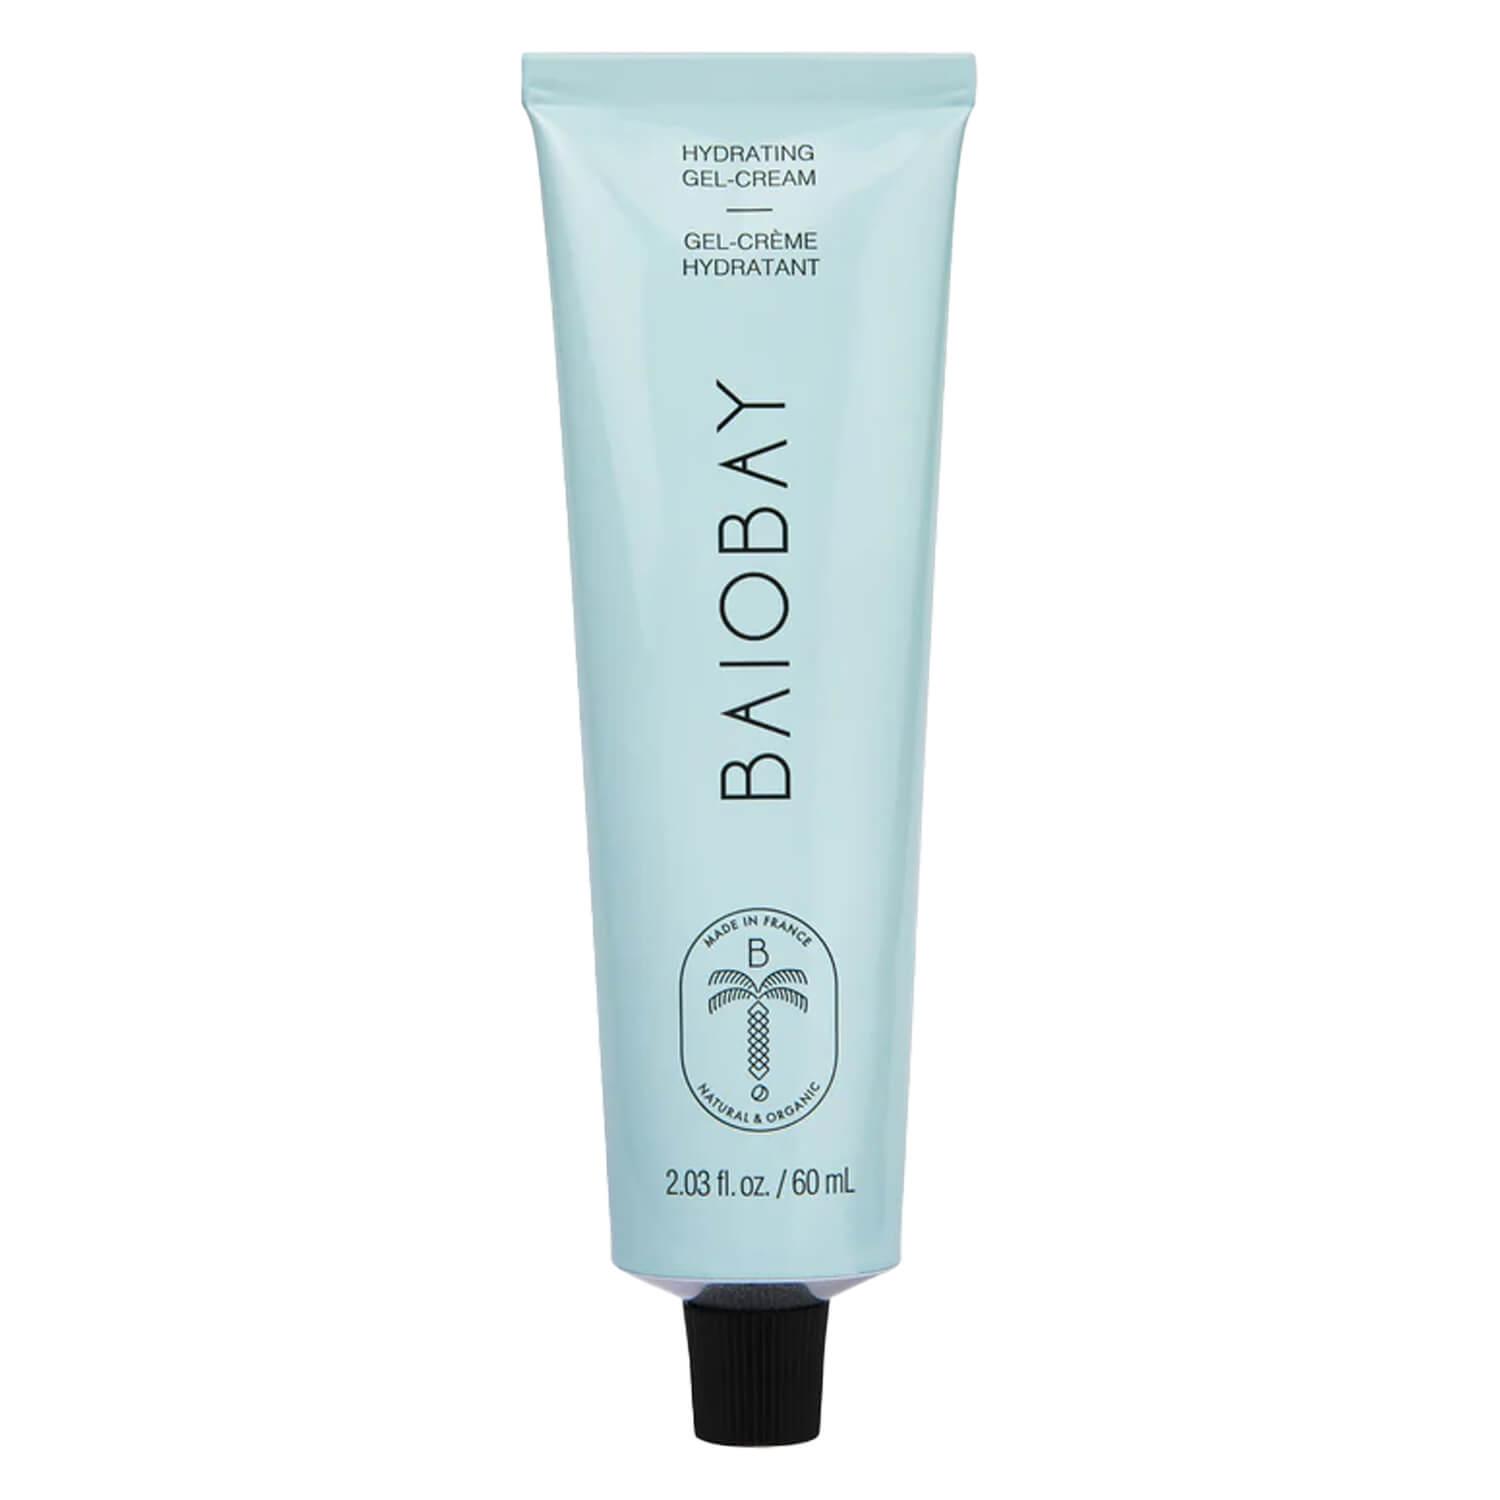 BAIOBAY - Hydrating Gel-Cream